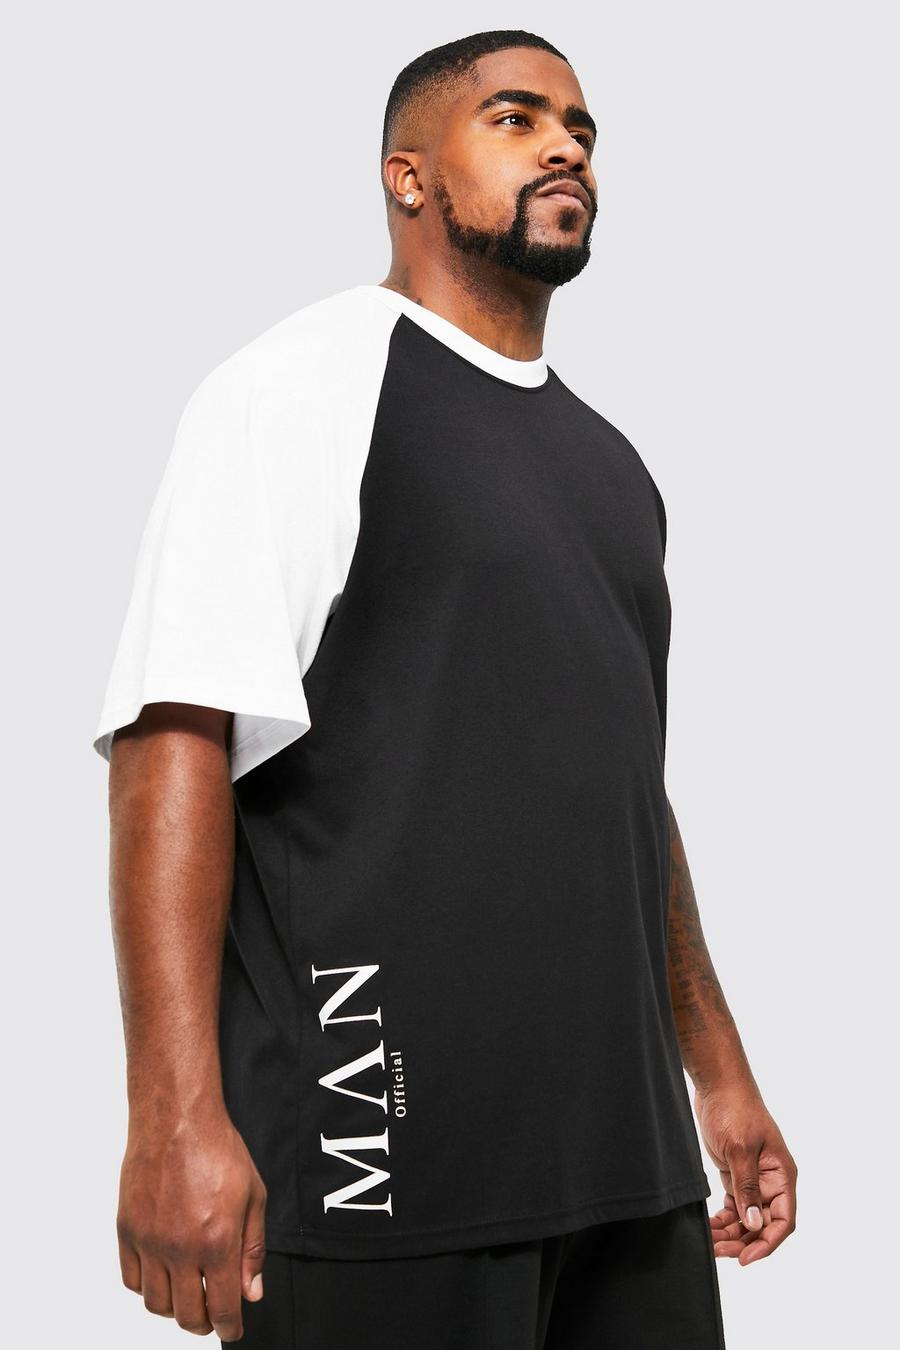 T-shirt Plus Size Man con caratteri romani e maniche raglan, Black nero